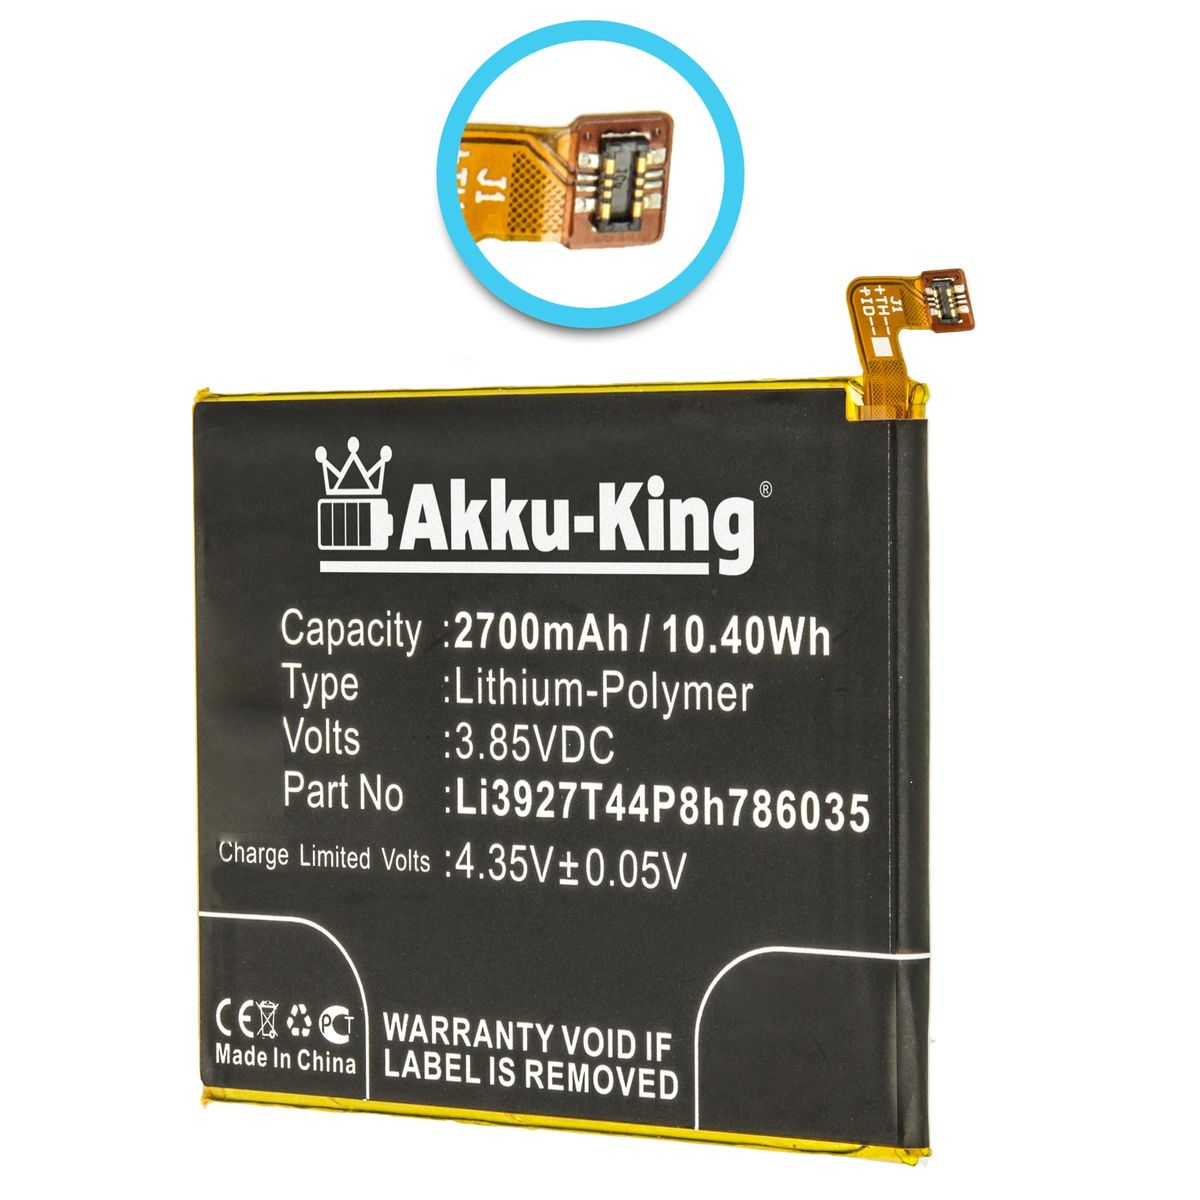 AKKU-KING Akku kompatibel ZTE Volt, Li-Polymer 2700mAh 3.85 Li3927T44P8h786035 Handy-Akku, mit